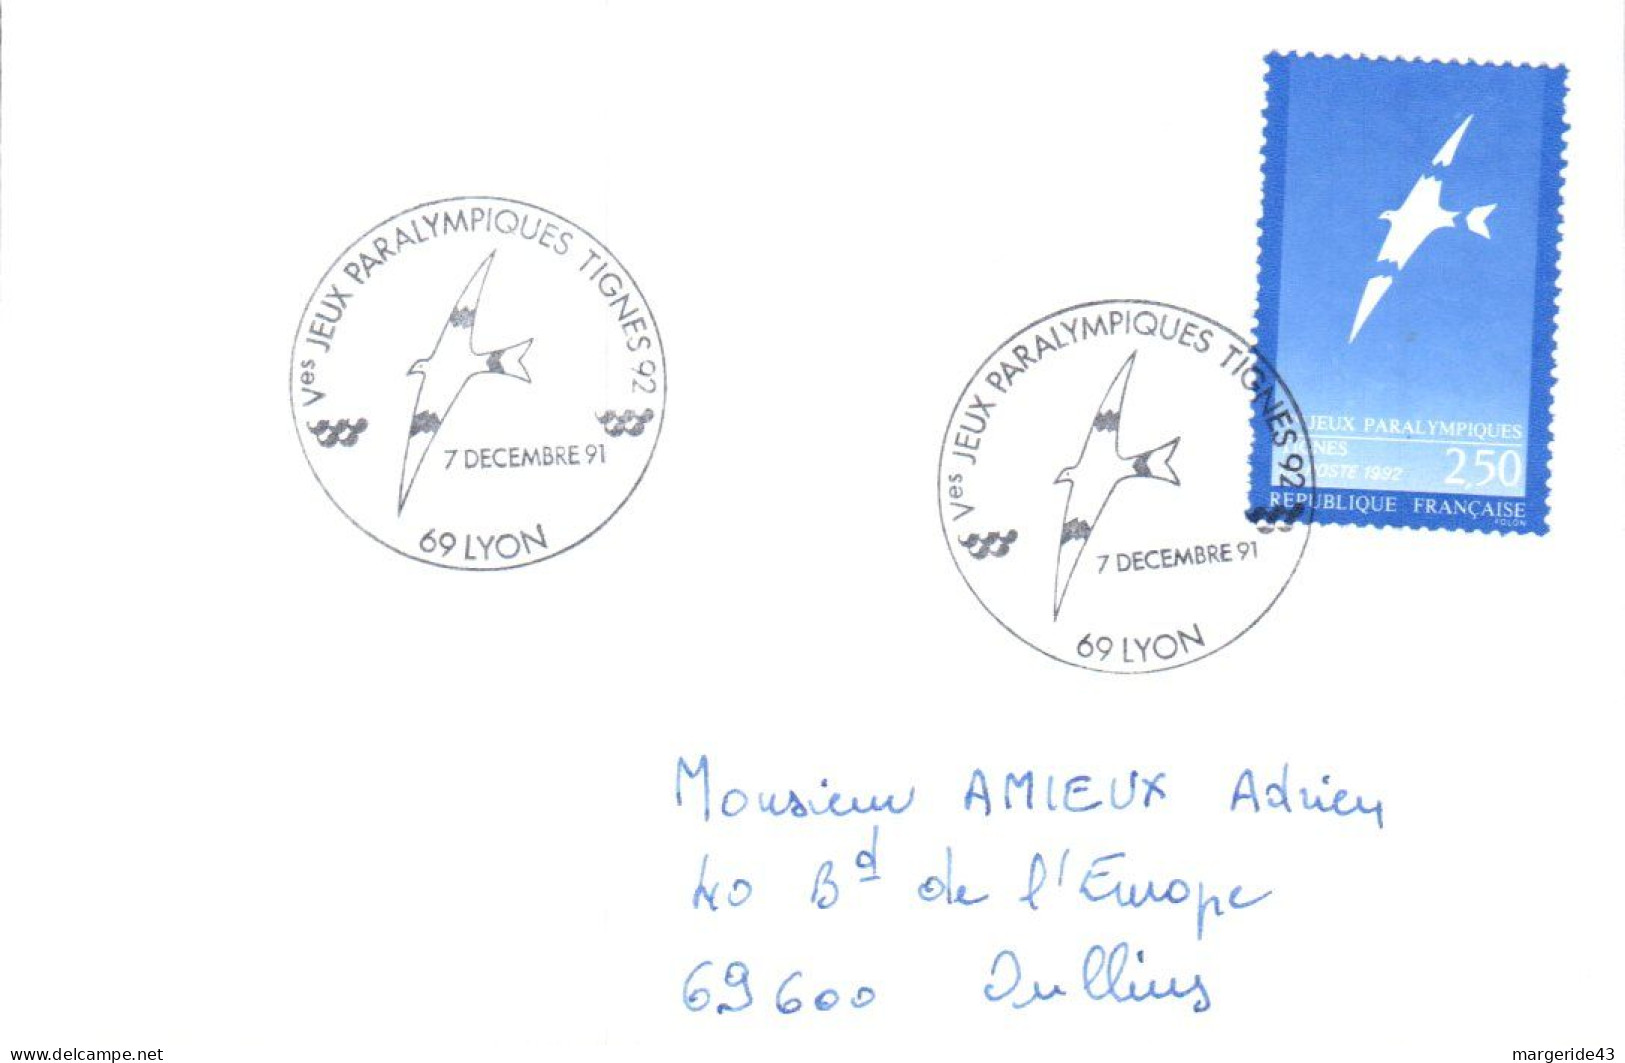 JEUX PARALYMPIQUES TIGNES 1991 - Commemorative Postmarks